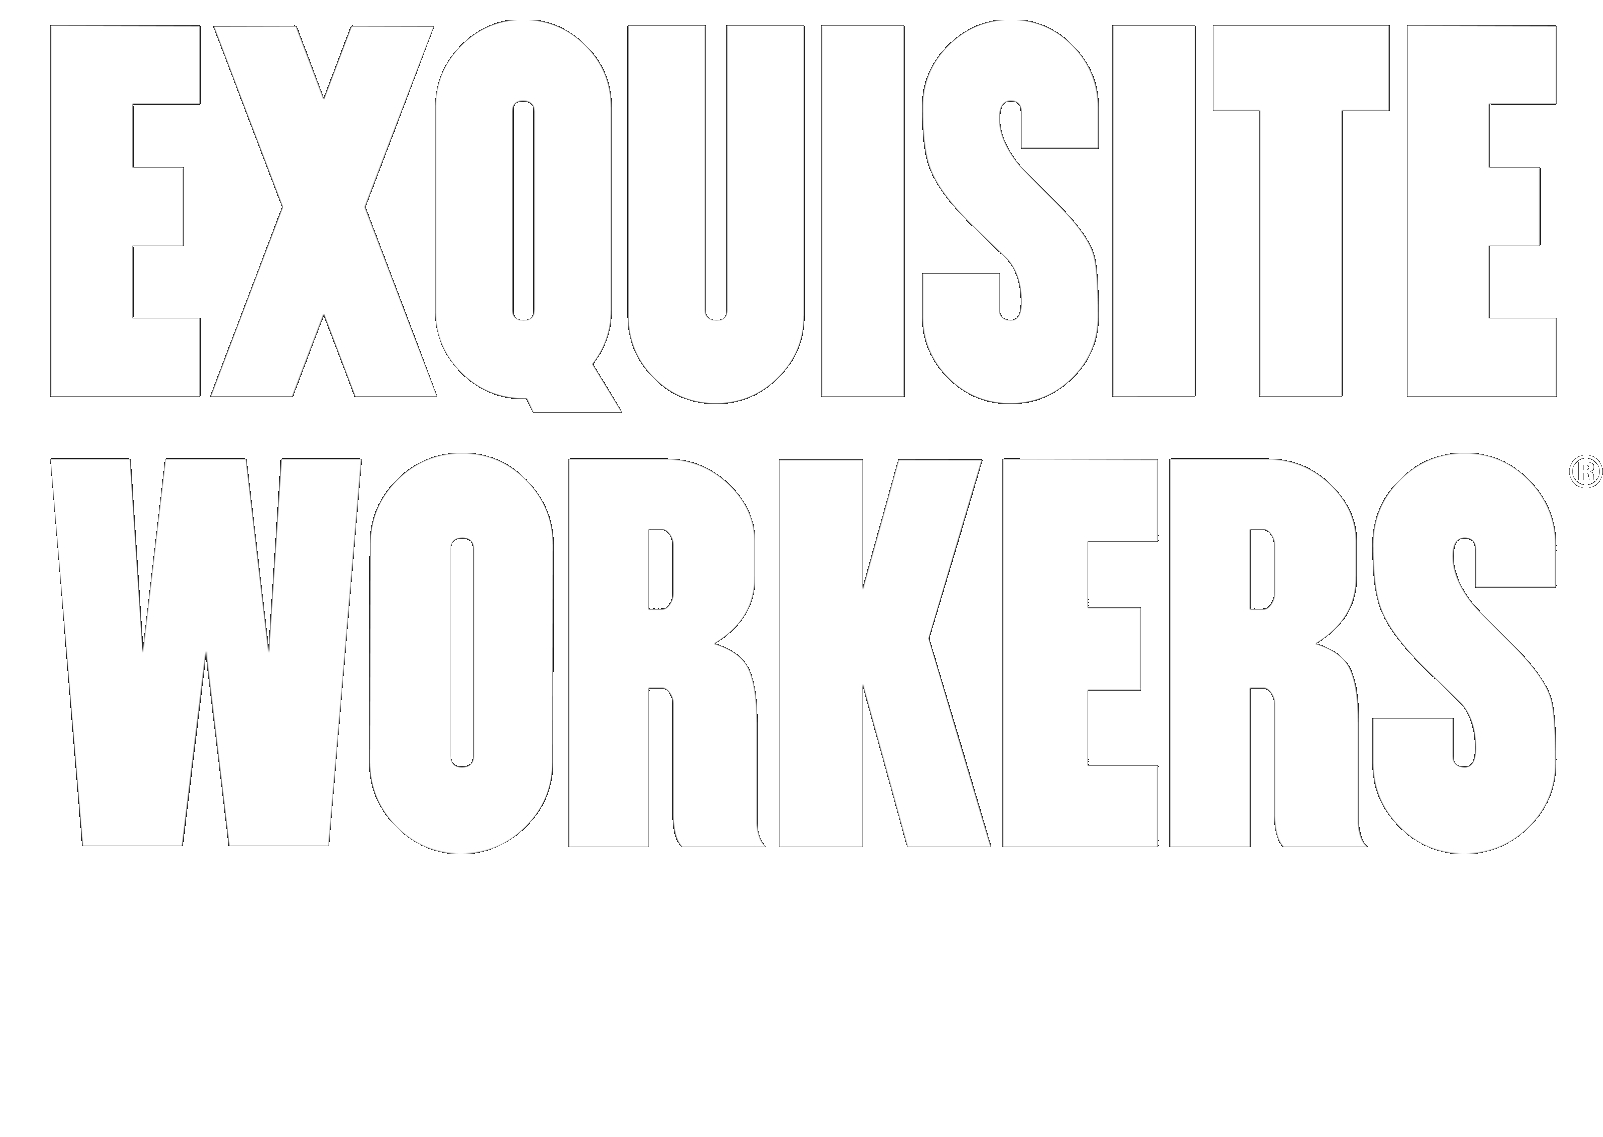 EXQUISITE WORKERS